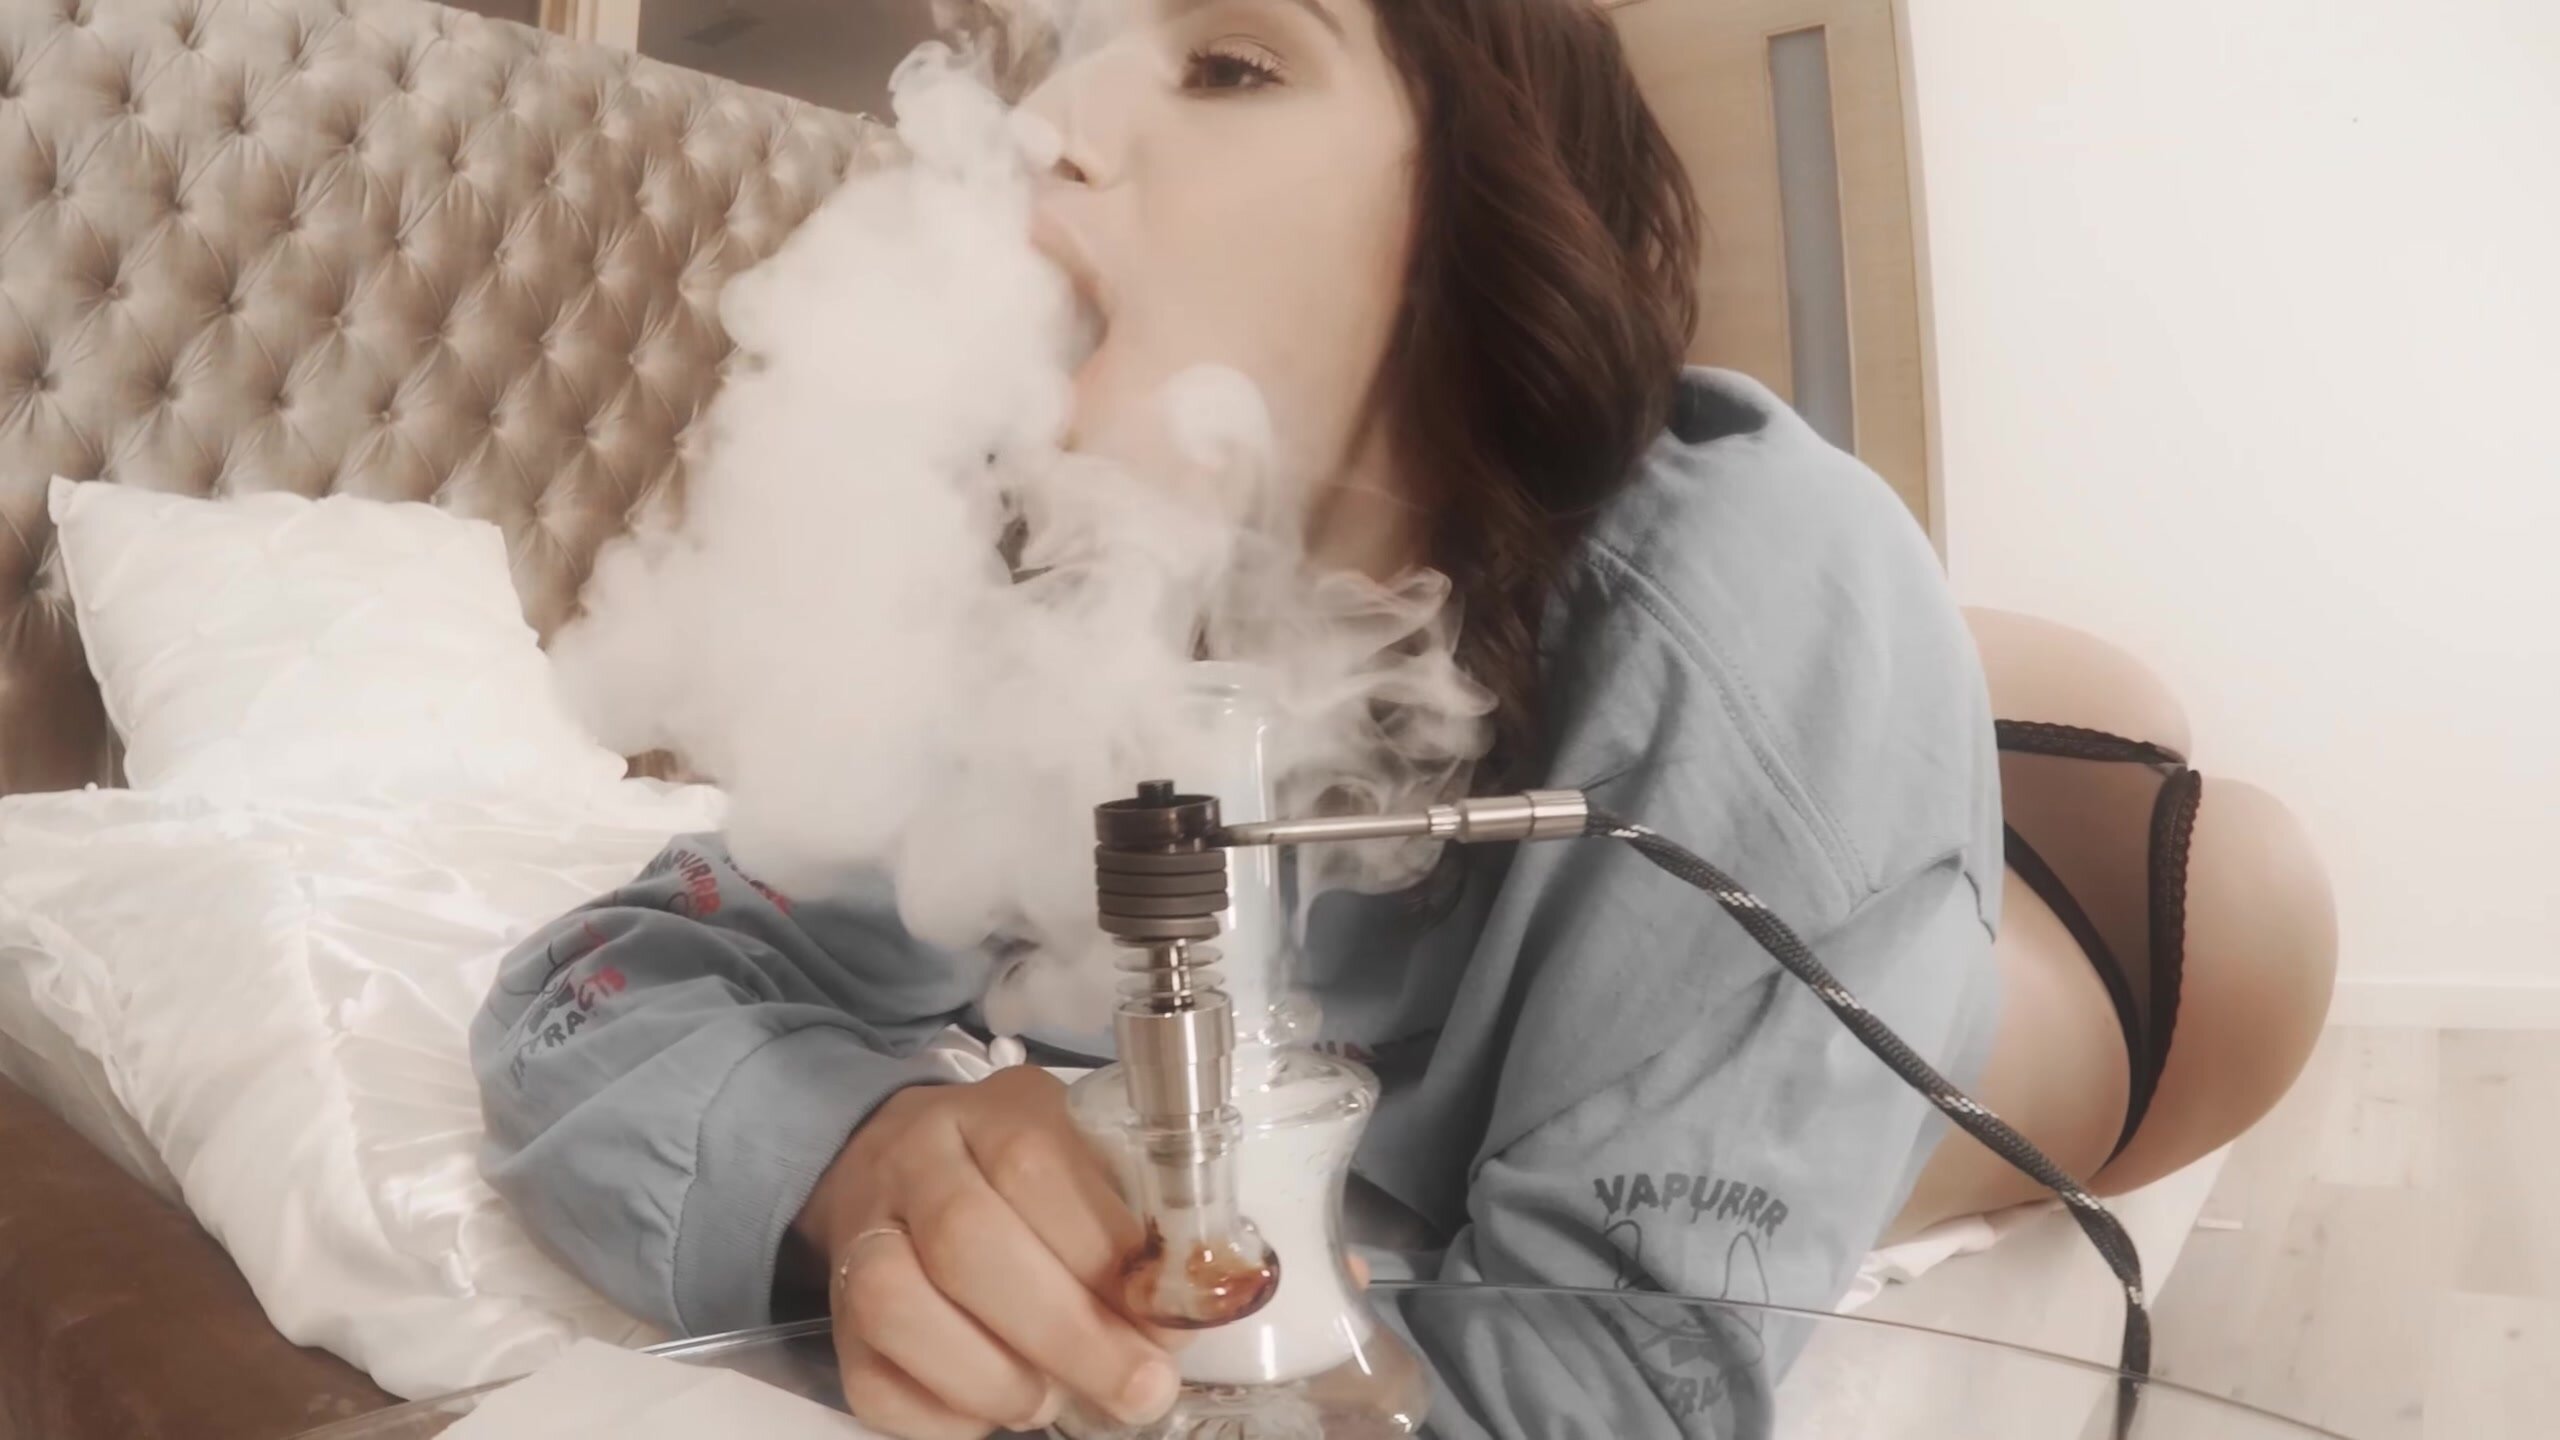 Sexy babe cough while smoking